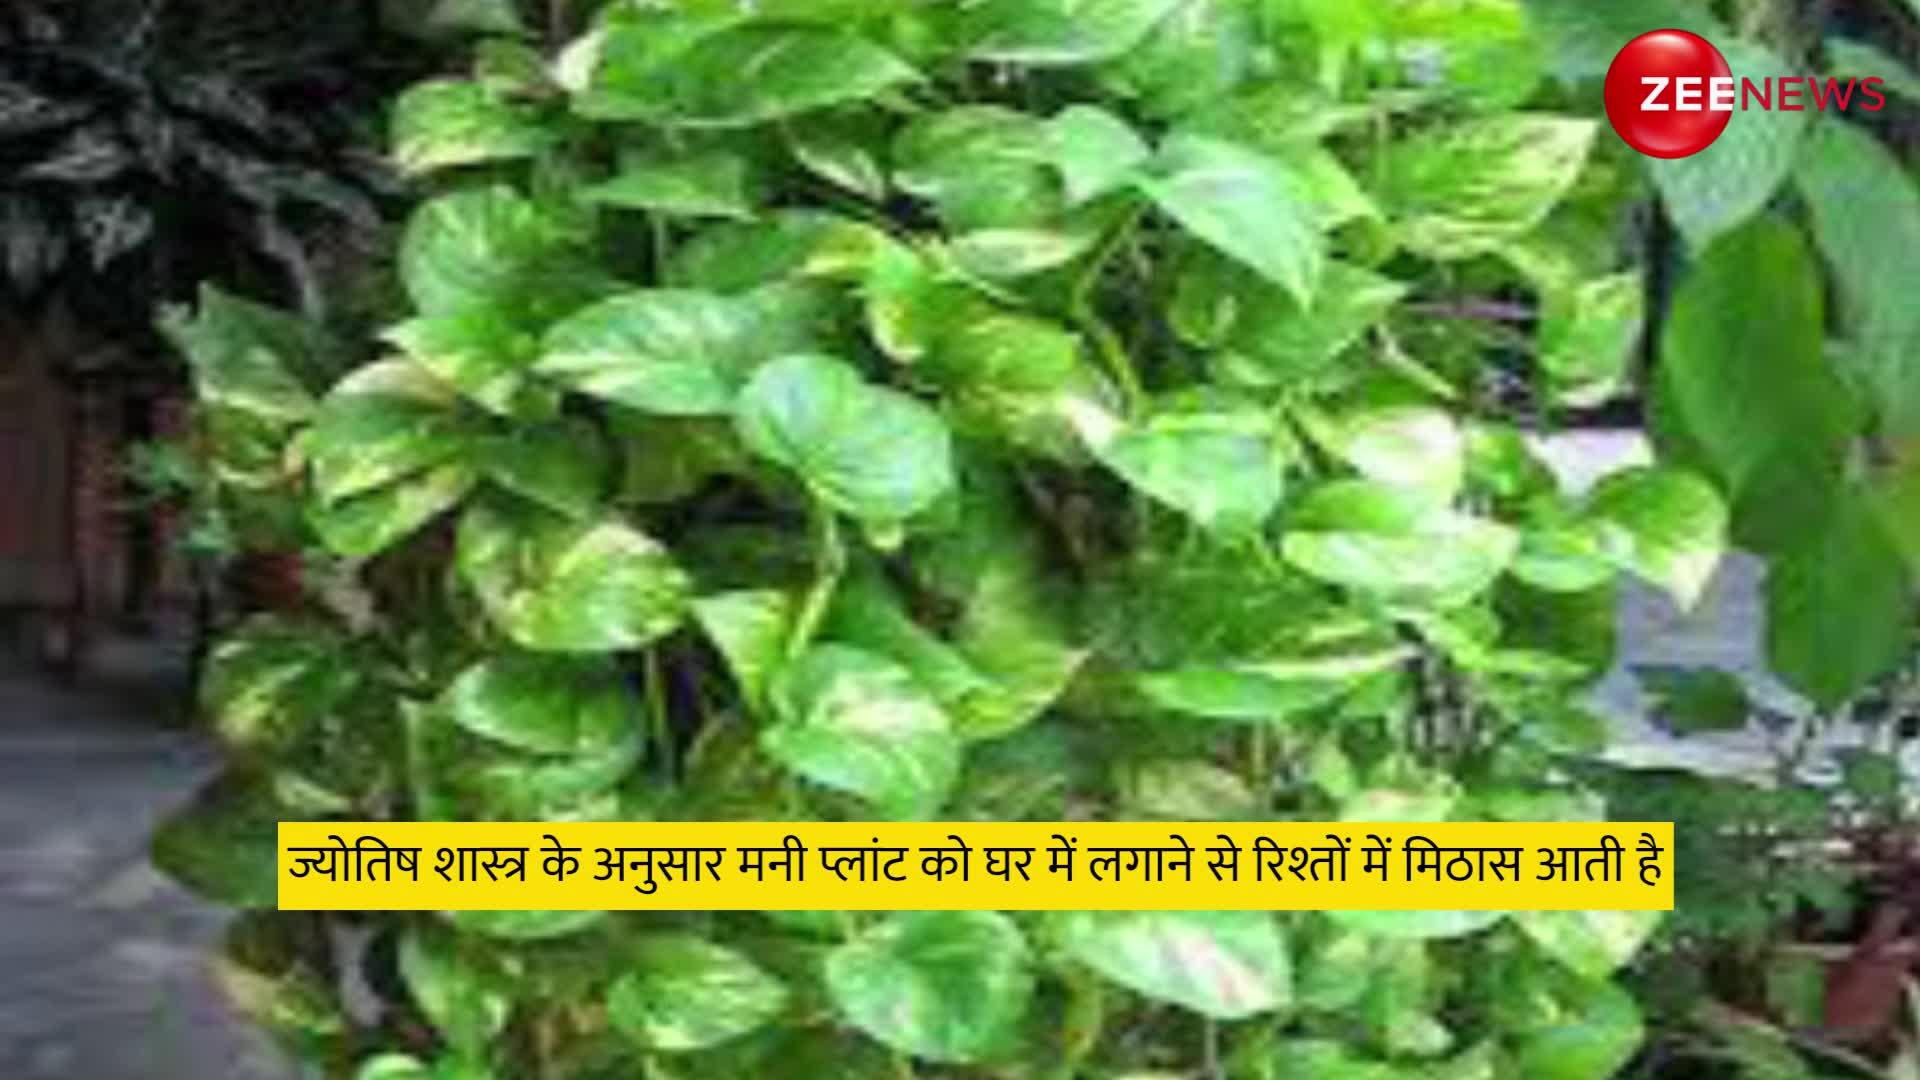 Vastu Tips: ये पौधा चुंबक की तरह चारों दिशाओं से खींचता है पैसा, इस नियमों का पालन करने पर ही दिखाता है असर!